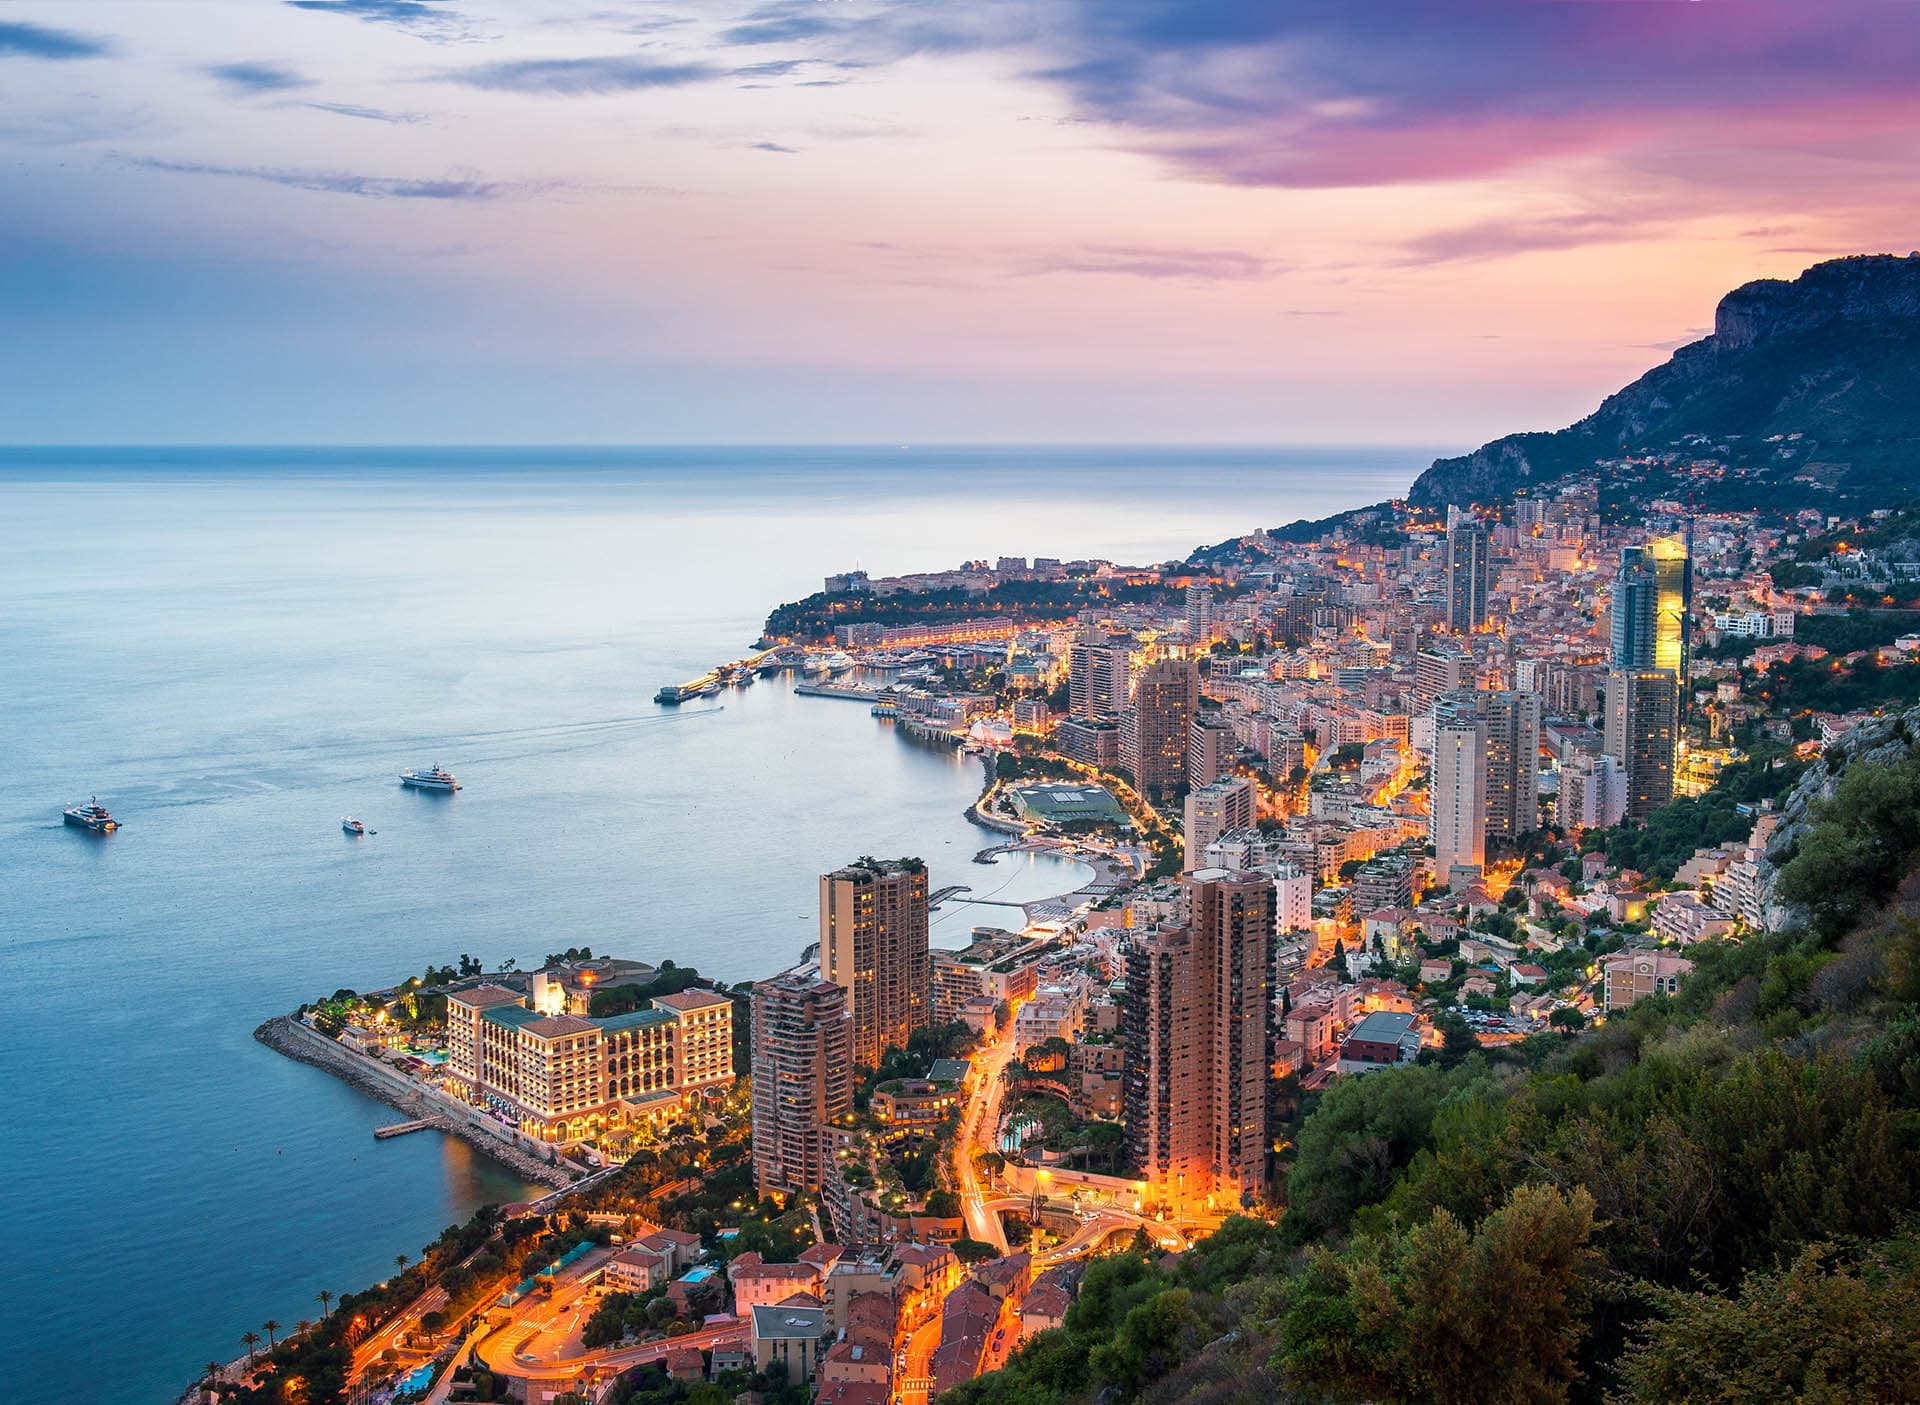 The notaries of Monaco